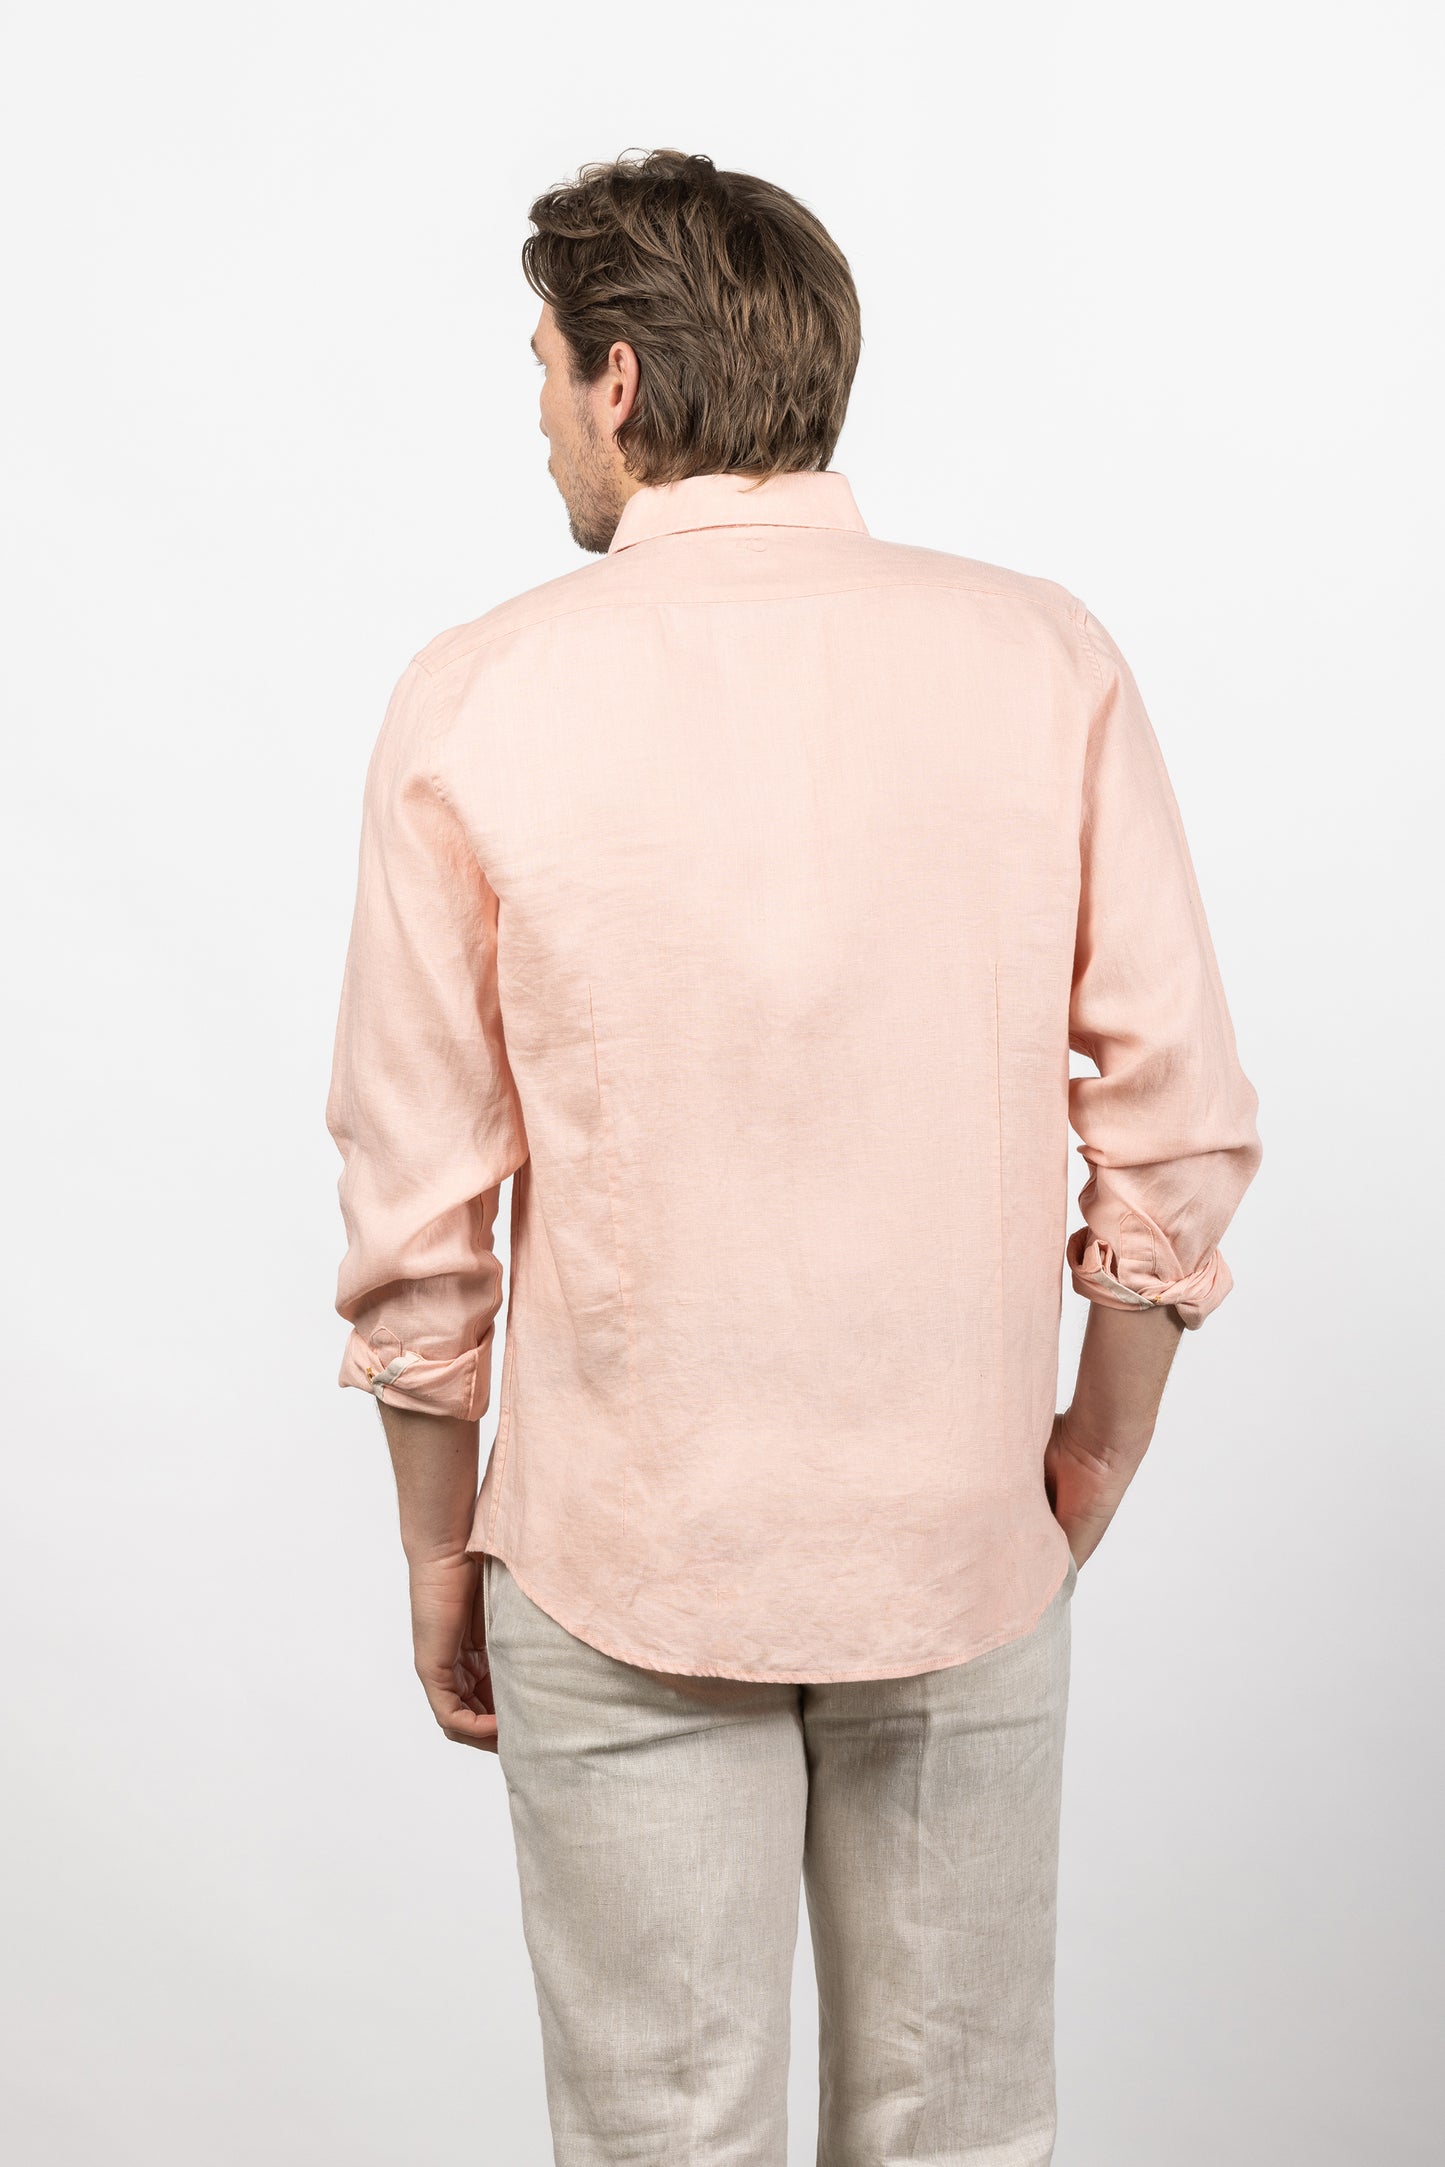 Cutler & Co - Blake Linen Shirt - Soft Pink or Blue